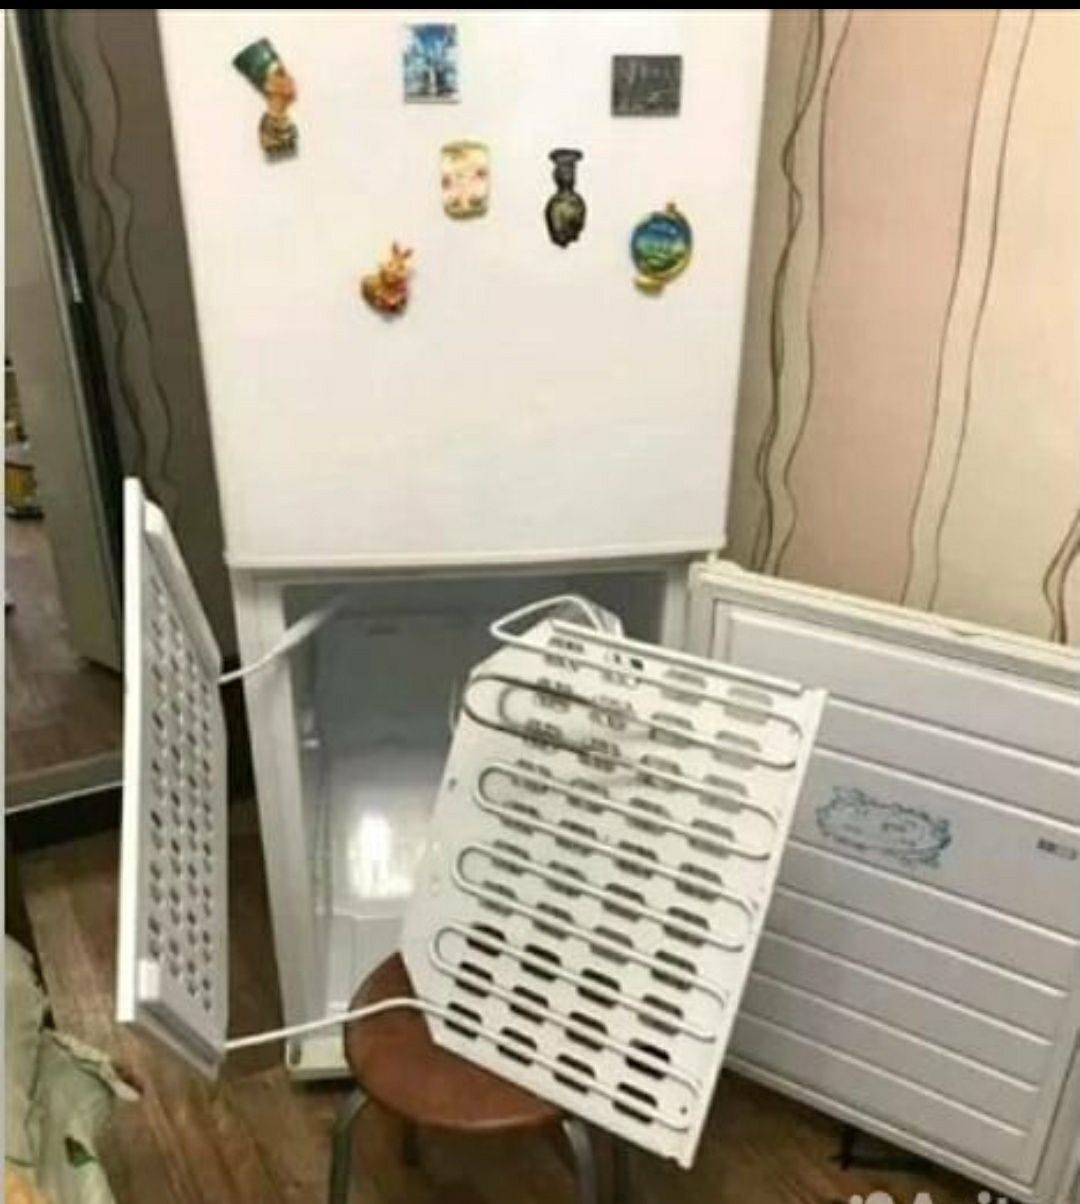 Ремонт холодильников с выездом